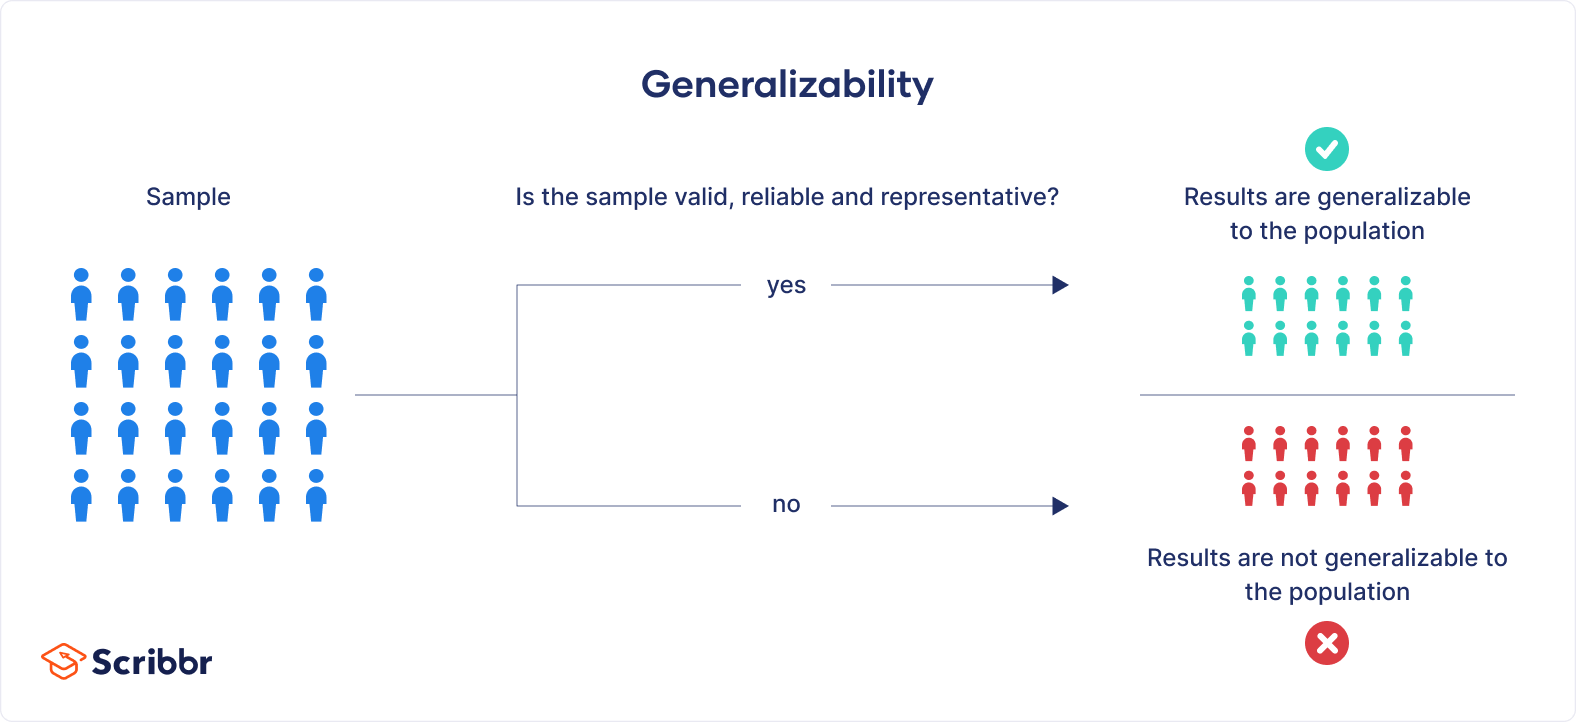 What is generalizability?